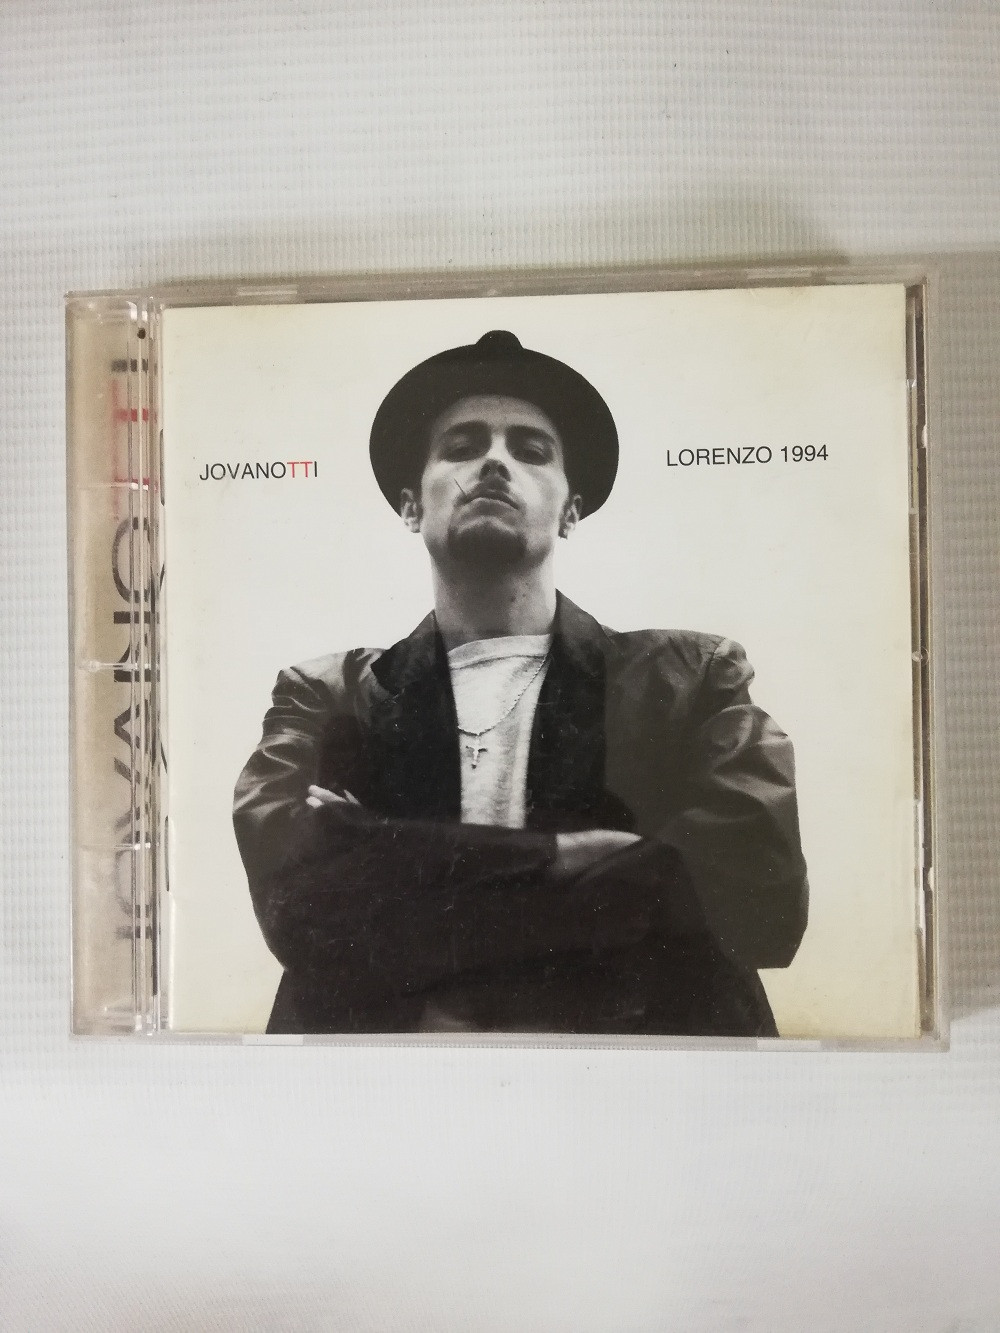 Imagen CD JOVANOTTI - LORENZO 1994